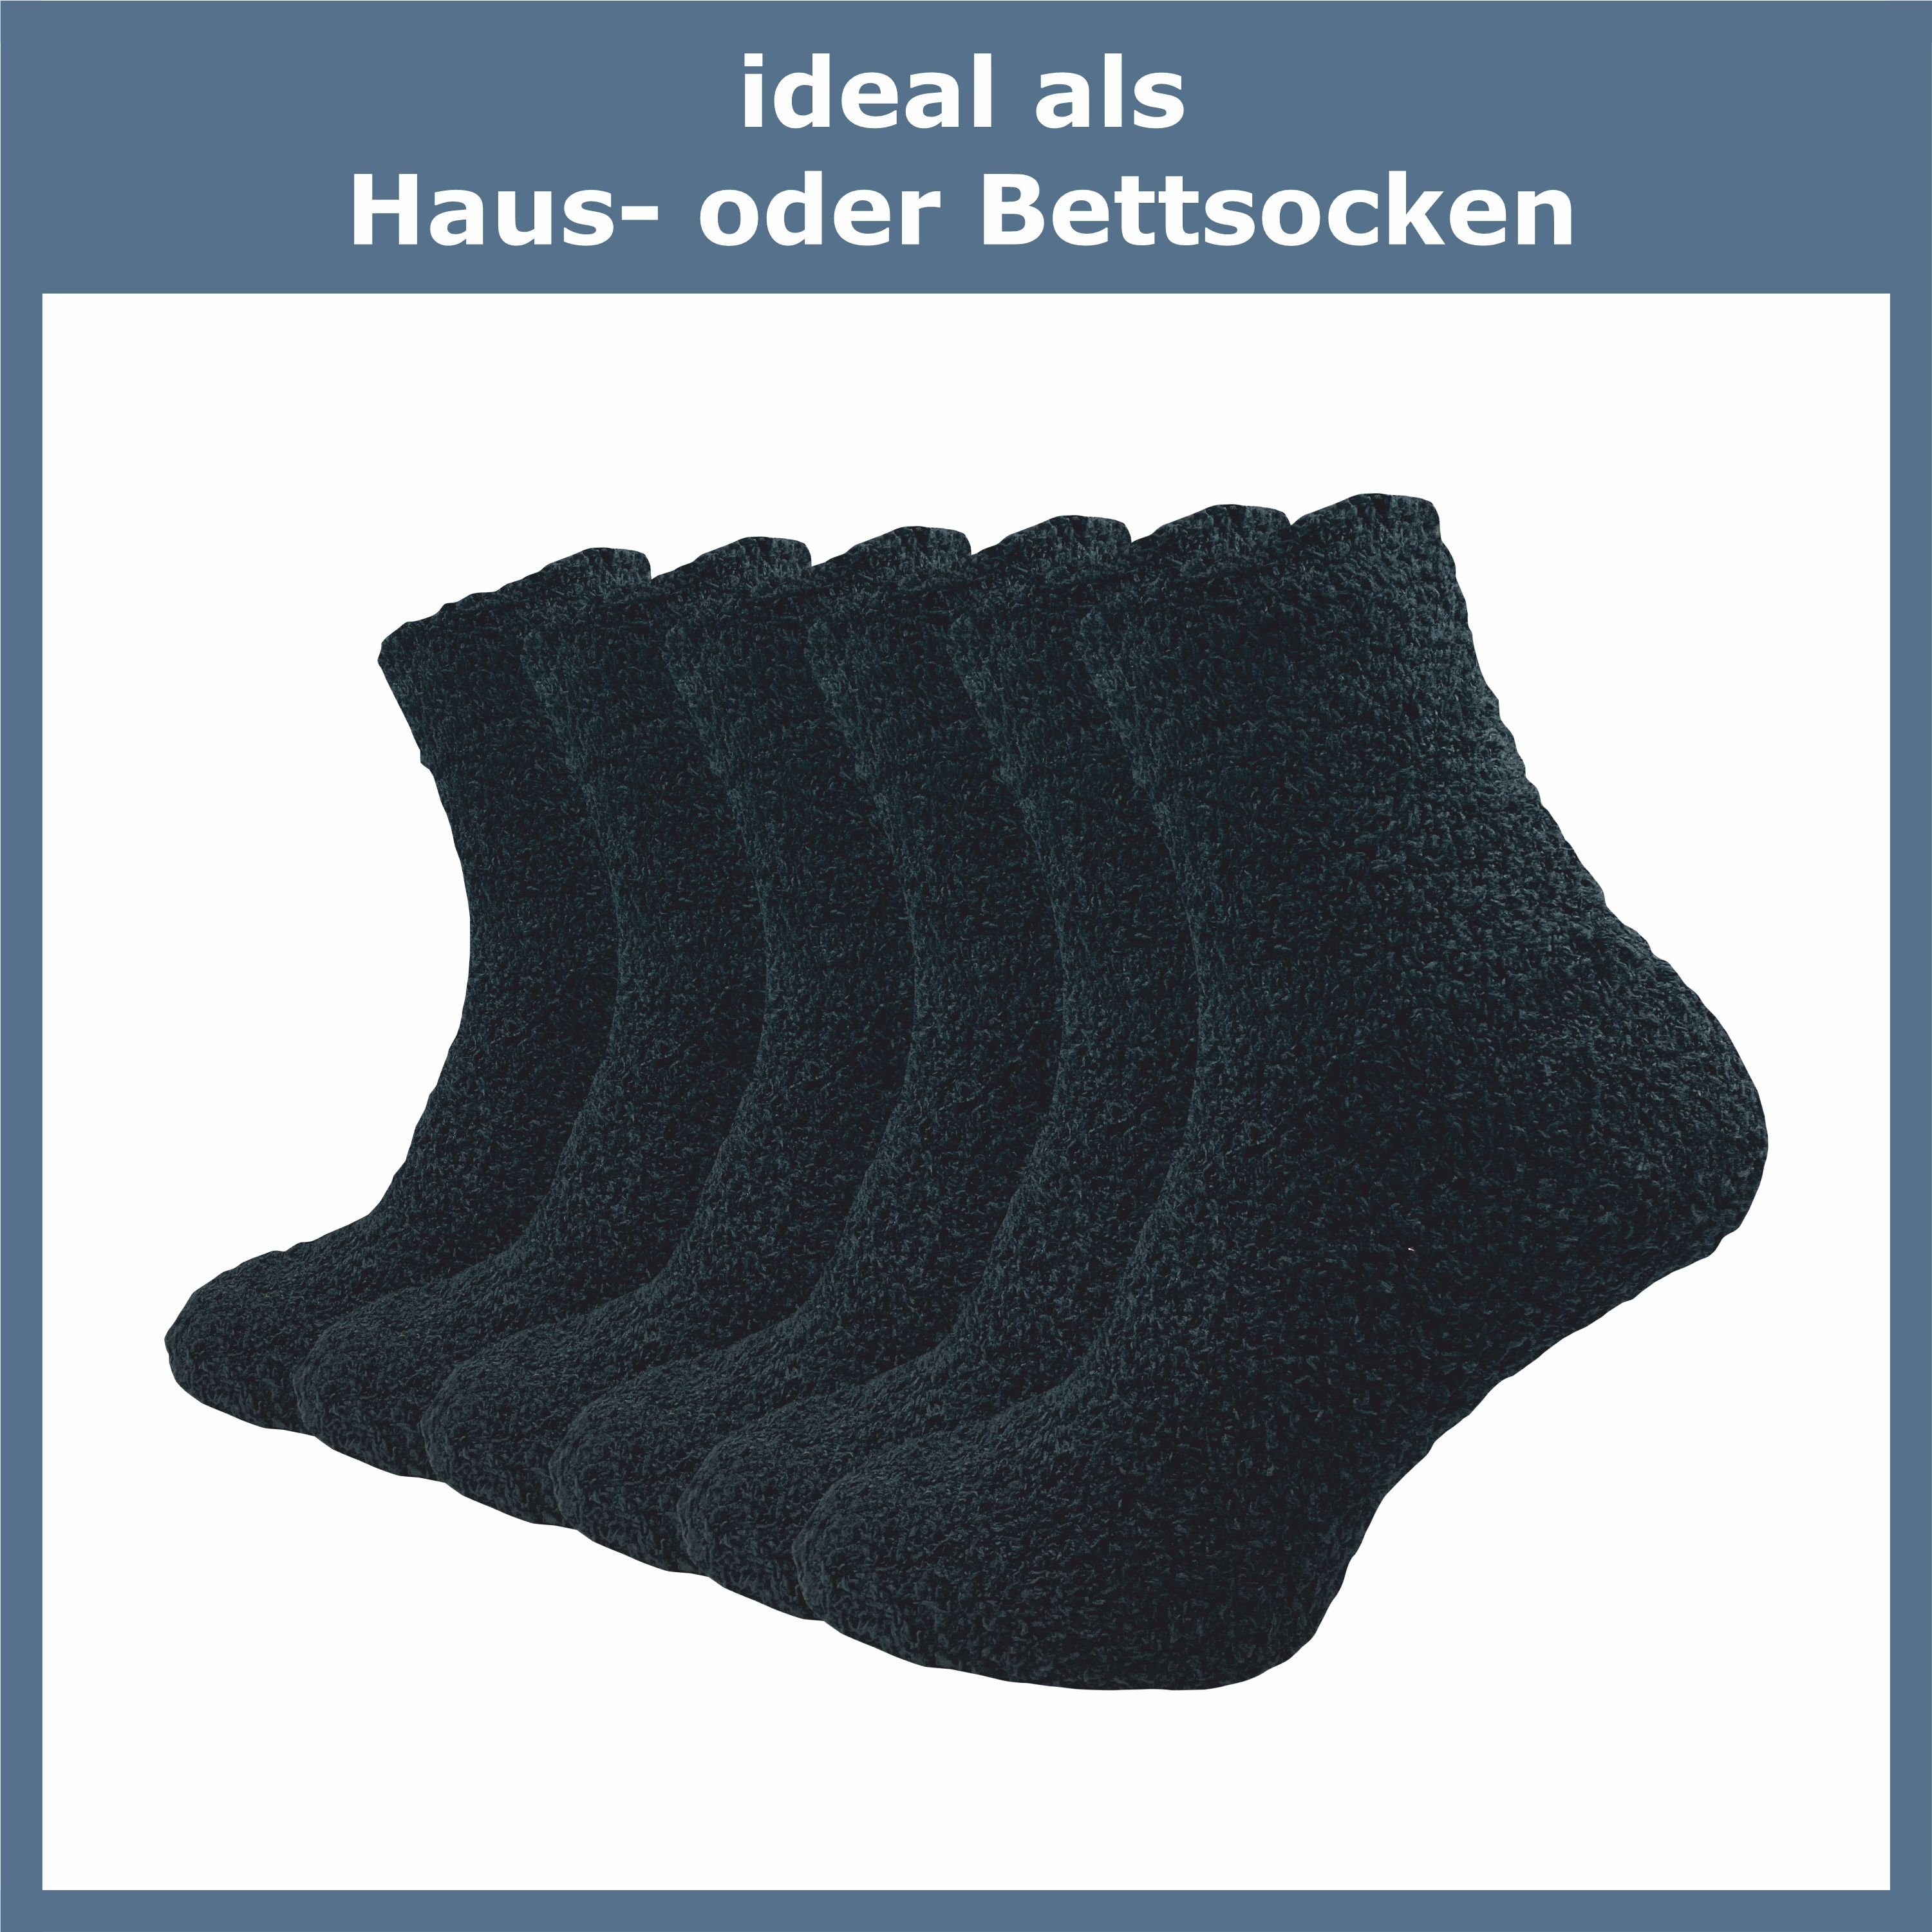 GAWILO Kuschelsocken für Damen für Haussocken - Paar) aus extra & flauschig an kalten (6 Material weich warme schwarz Tagen optimalen Tragekomfort für Füße flauschigem